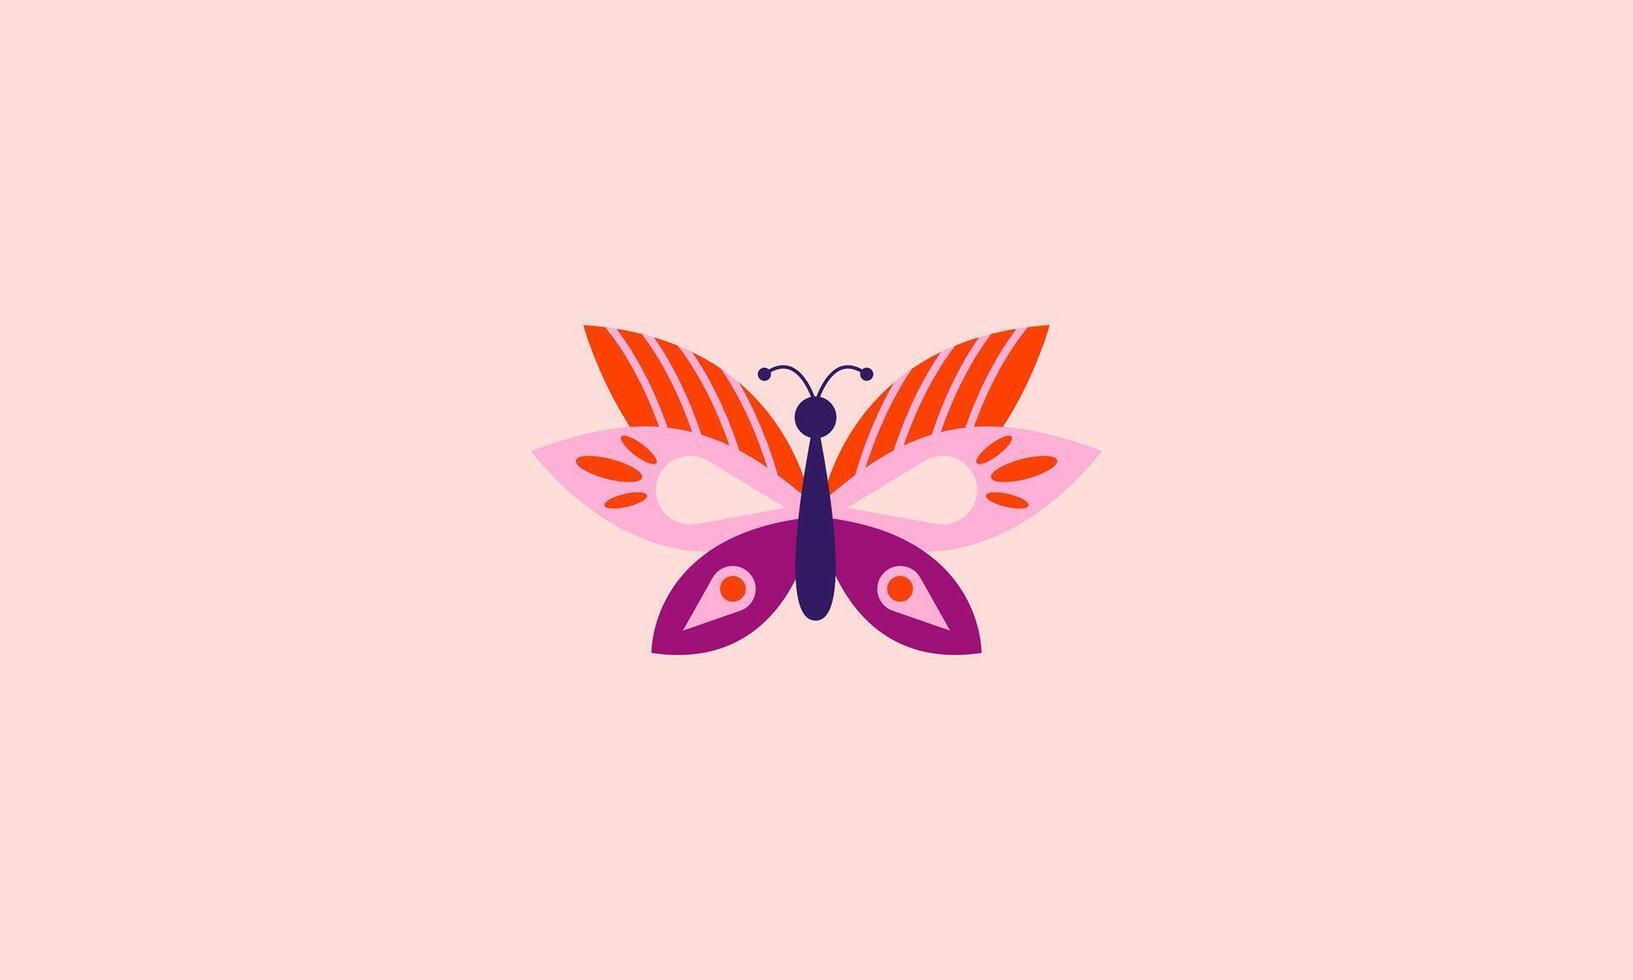 vettore illustrazione di farfalla bellezza piatto design